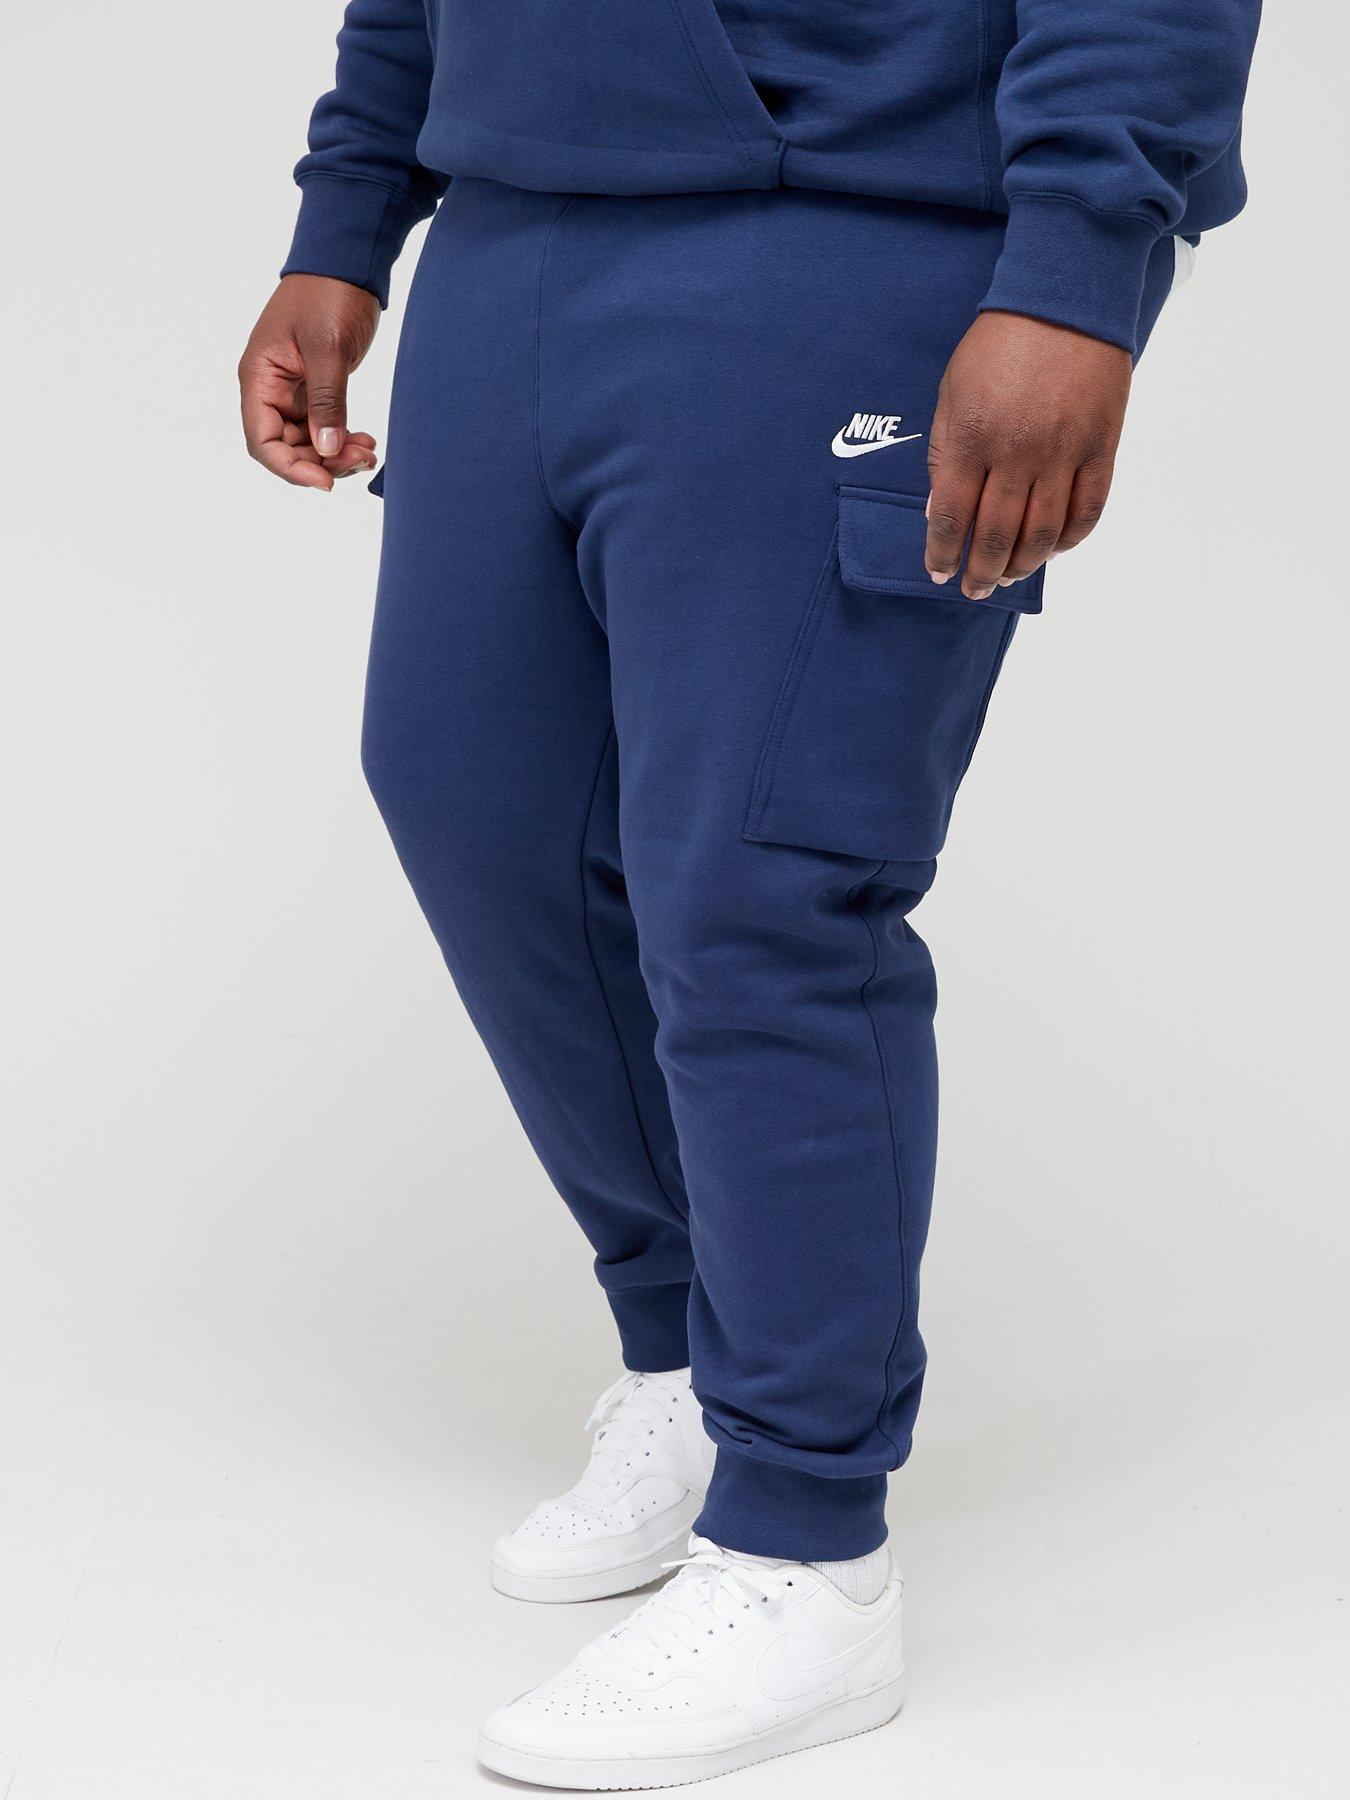 Desalentar Asociación amenaza Men's Nike Clothes 4 XL | Big & Tall | Very.co.uk